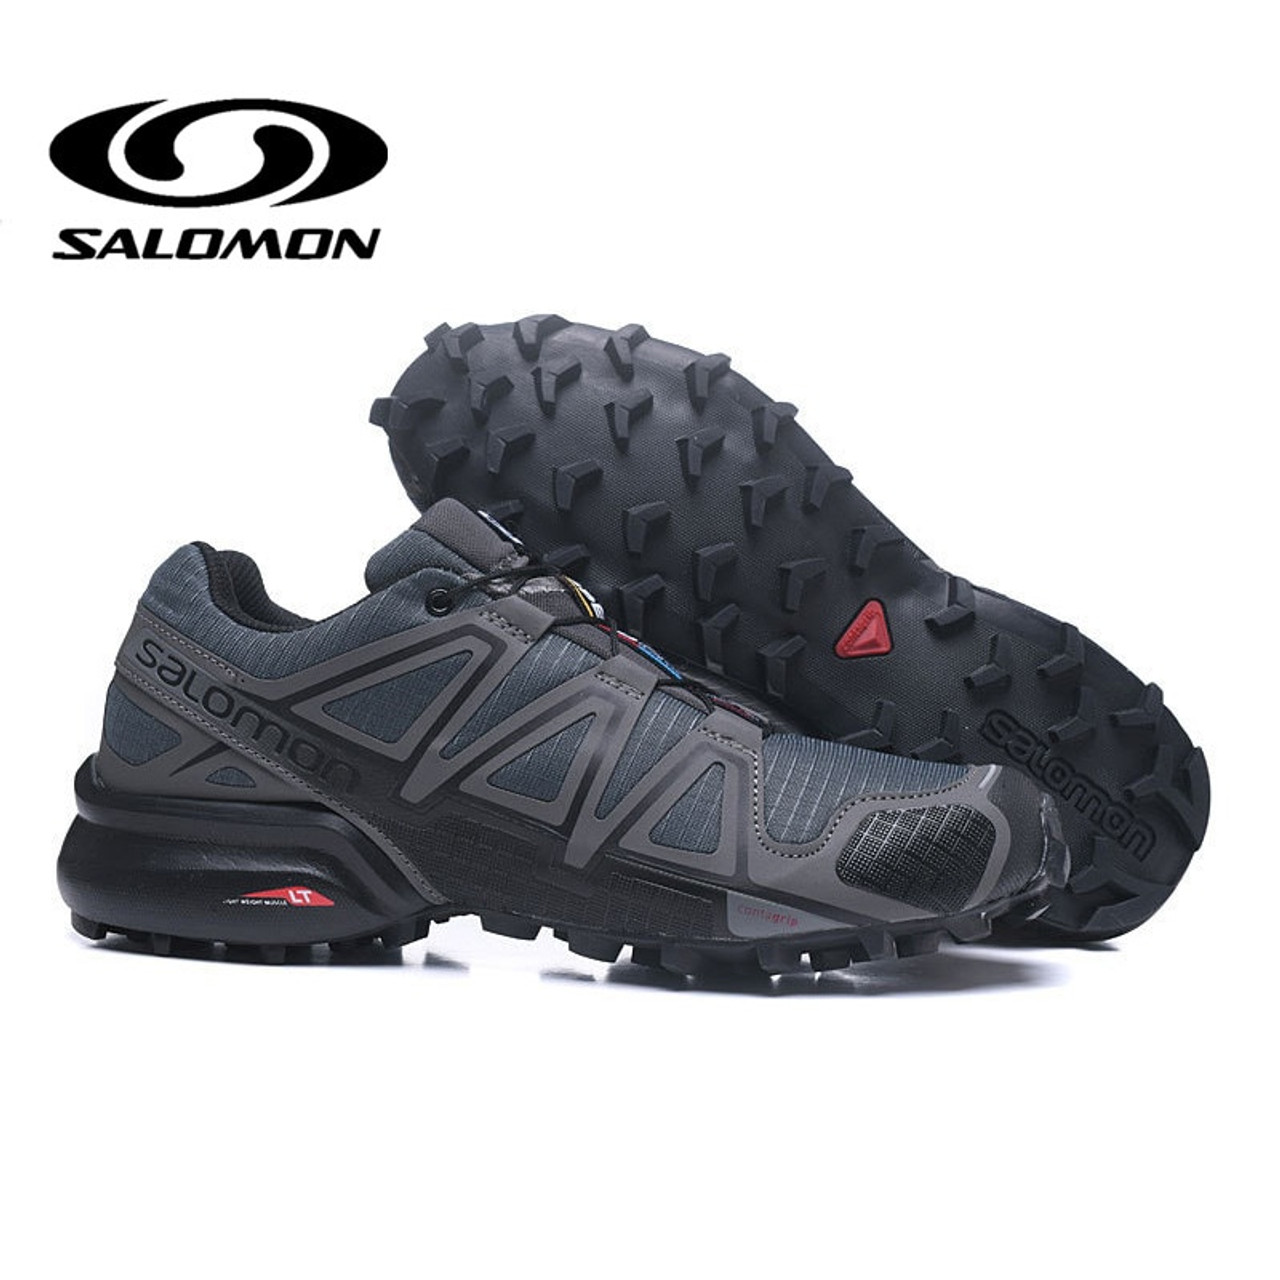 2019 salomon shoes